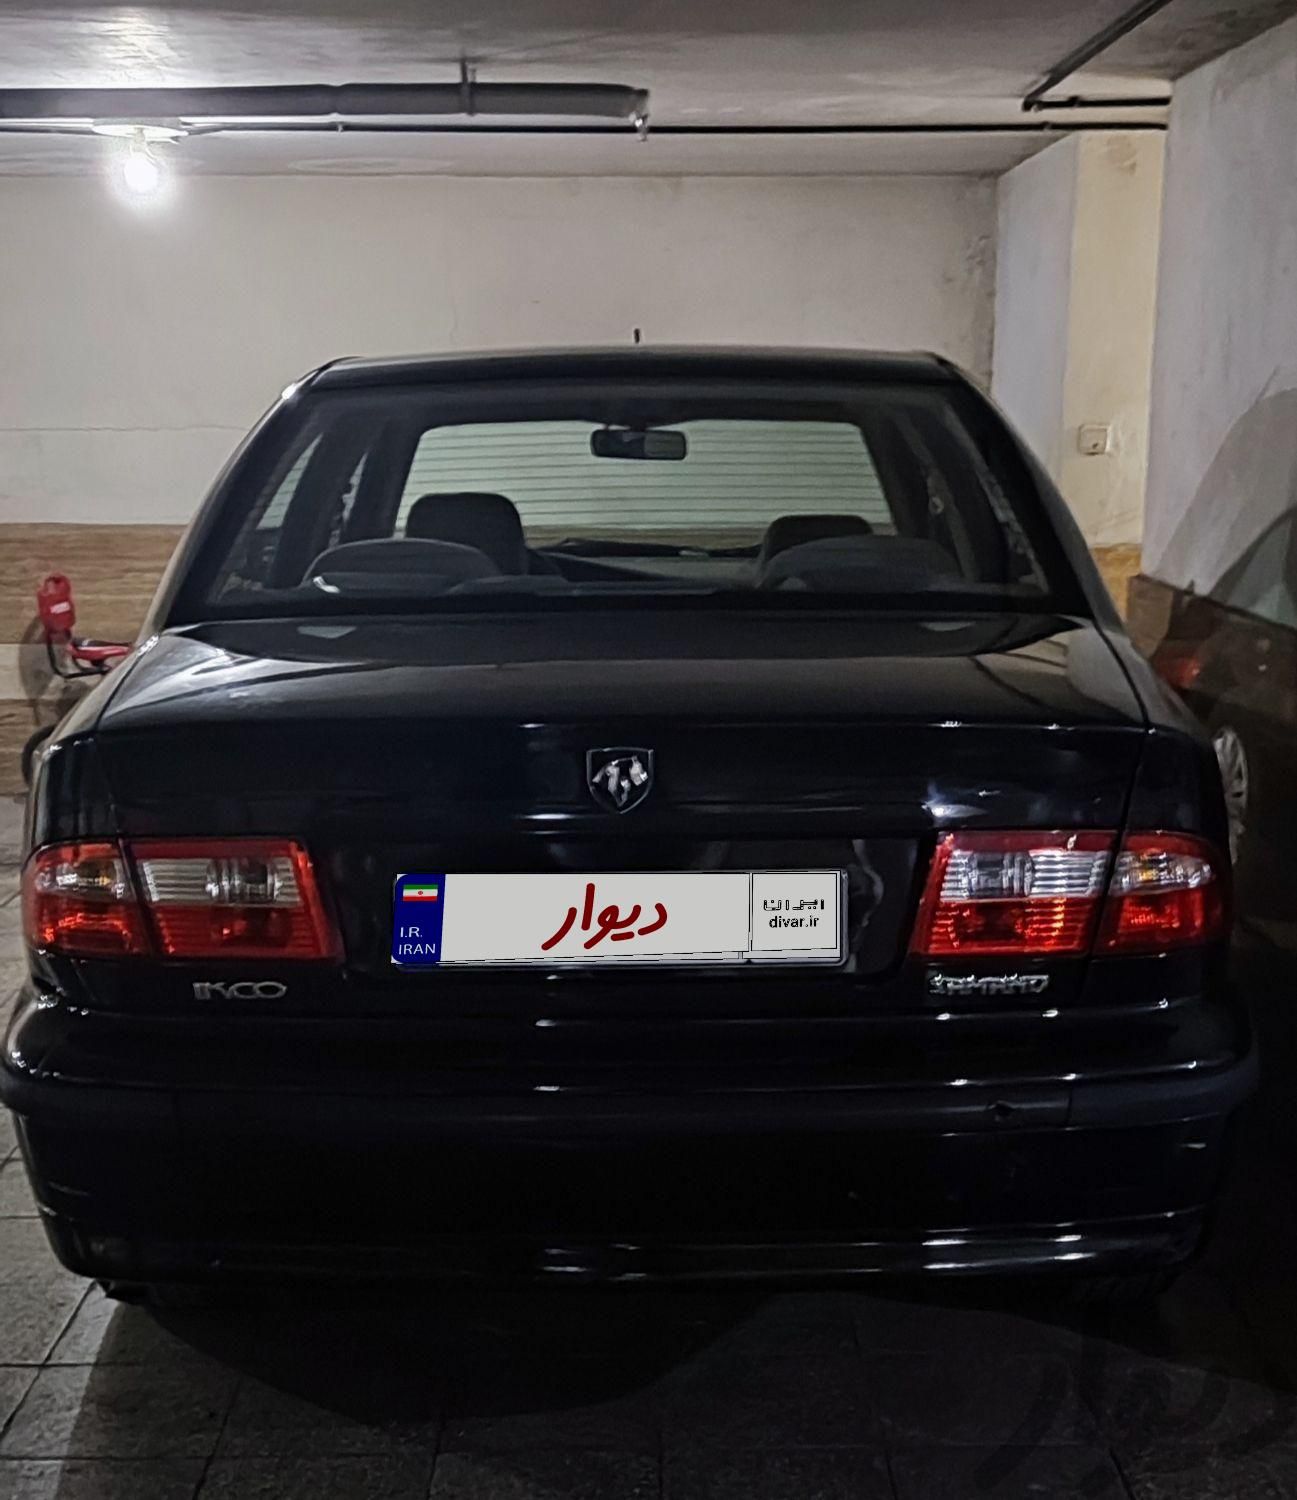 سمند LX EF7 بنزینی، مدل ۱۳۹۳|سواری و وانت|تهران, شهرک ولیعصر|دیوار